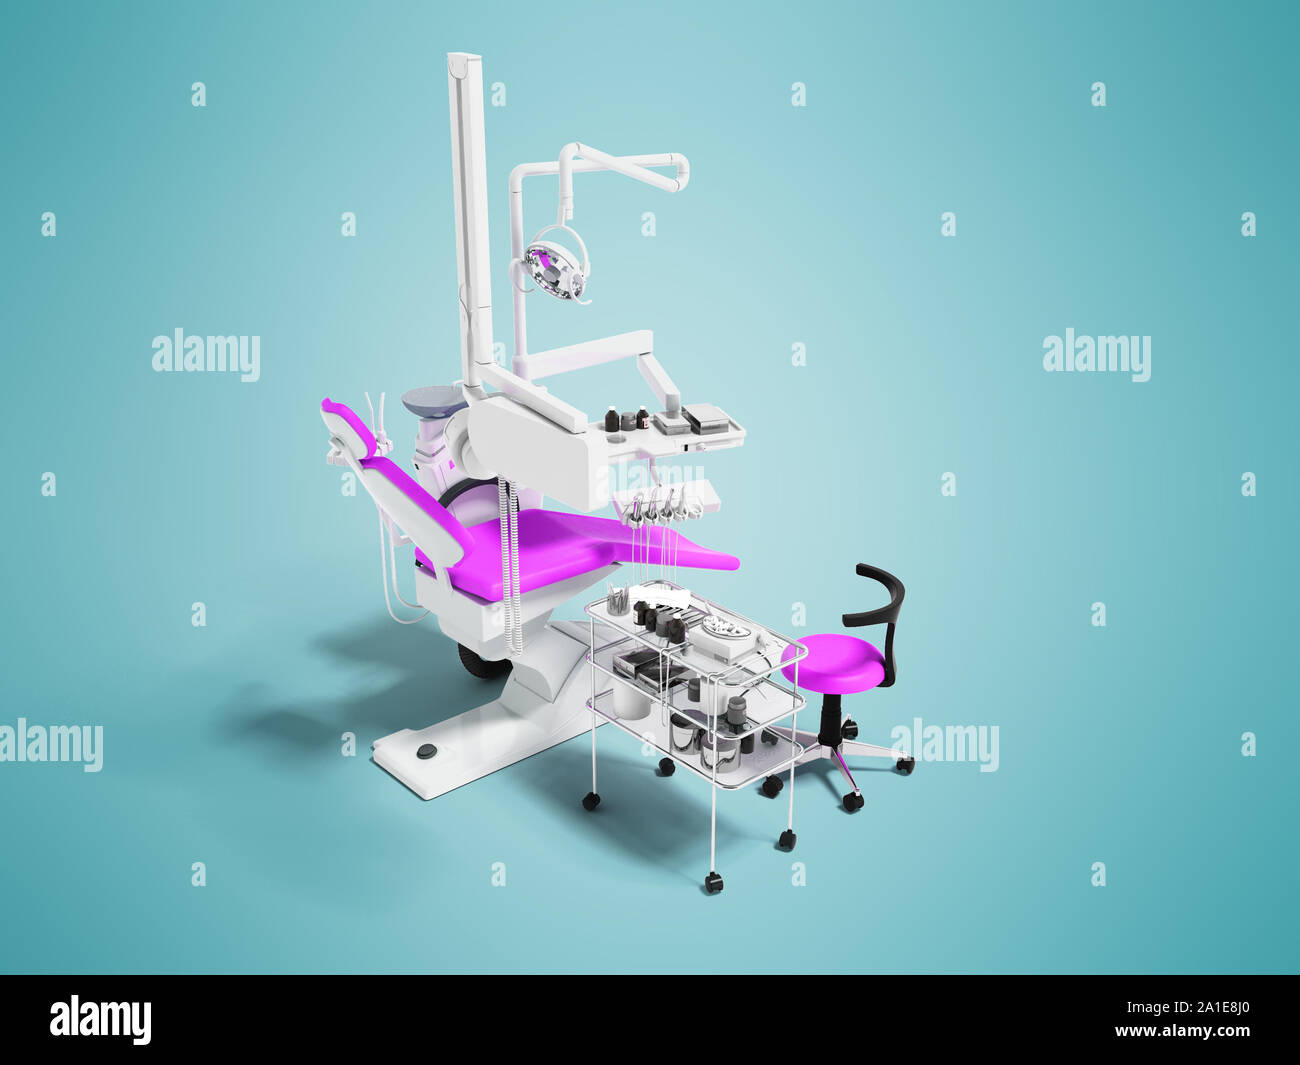 Fauteuil dentaire avec éclairage à partir de la tables de chevet avec des outils pour le traitement et l'enlèvement de dents avec un fauteuil pour travailler avec inserts blanc rose 3D Banque D'Images